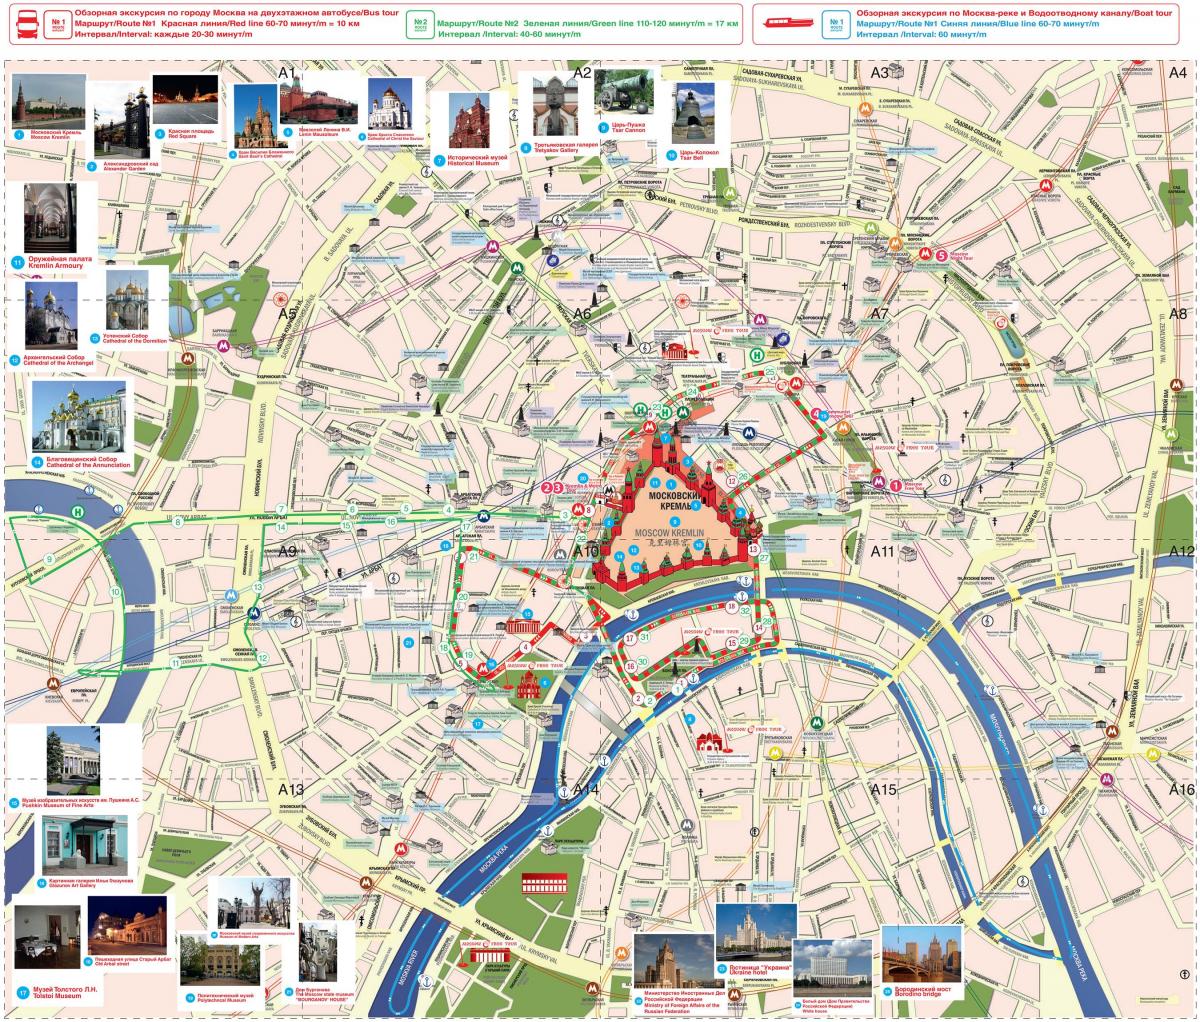 Moskwa bus tour trasa na mapie